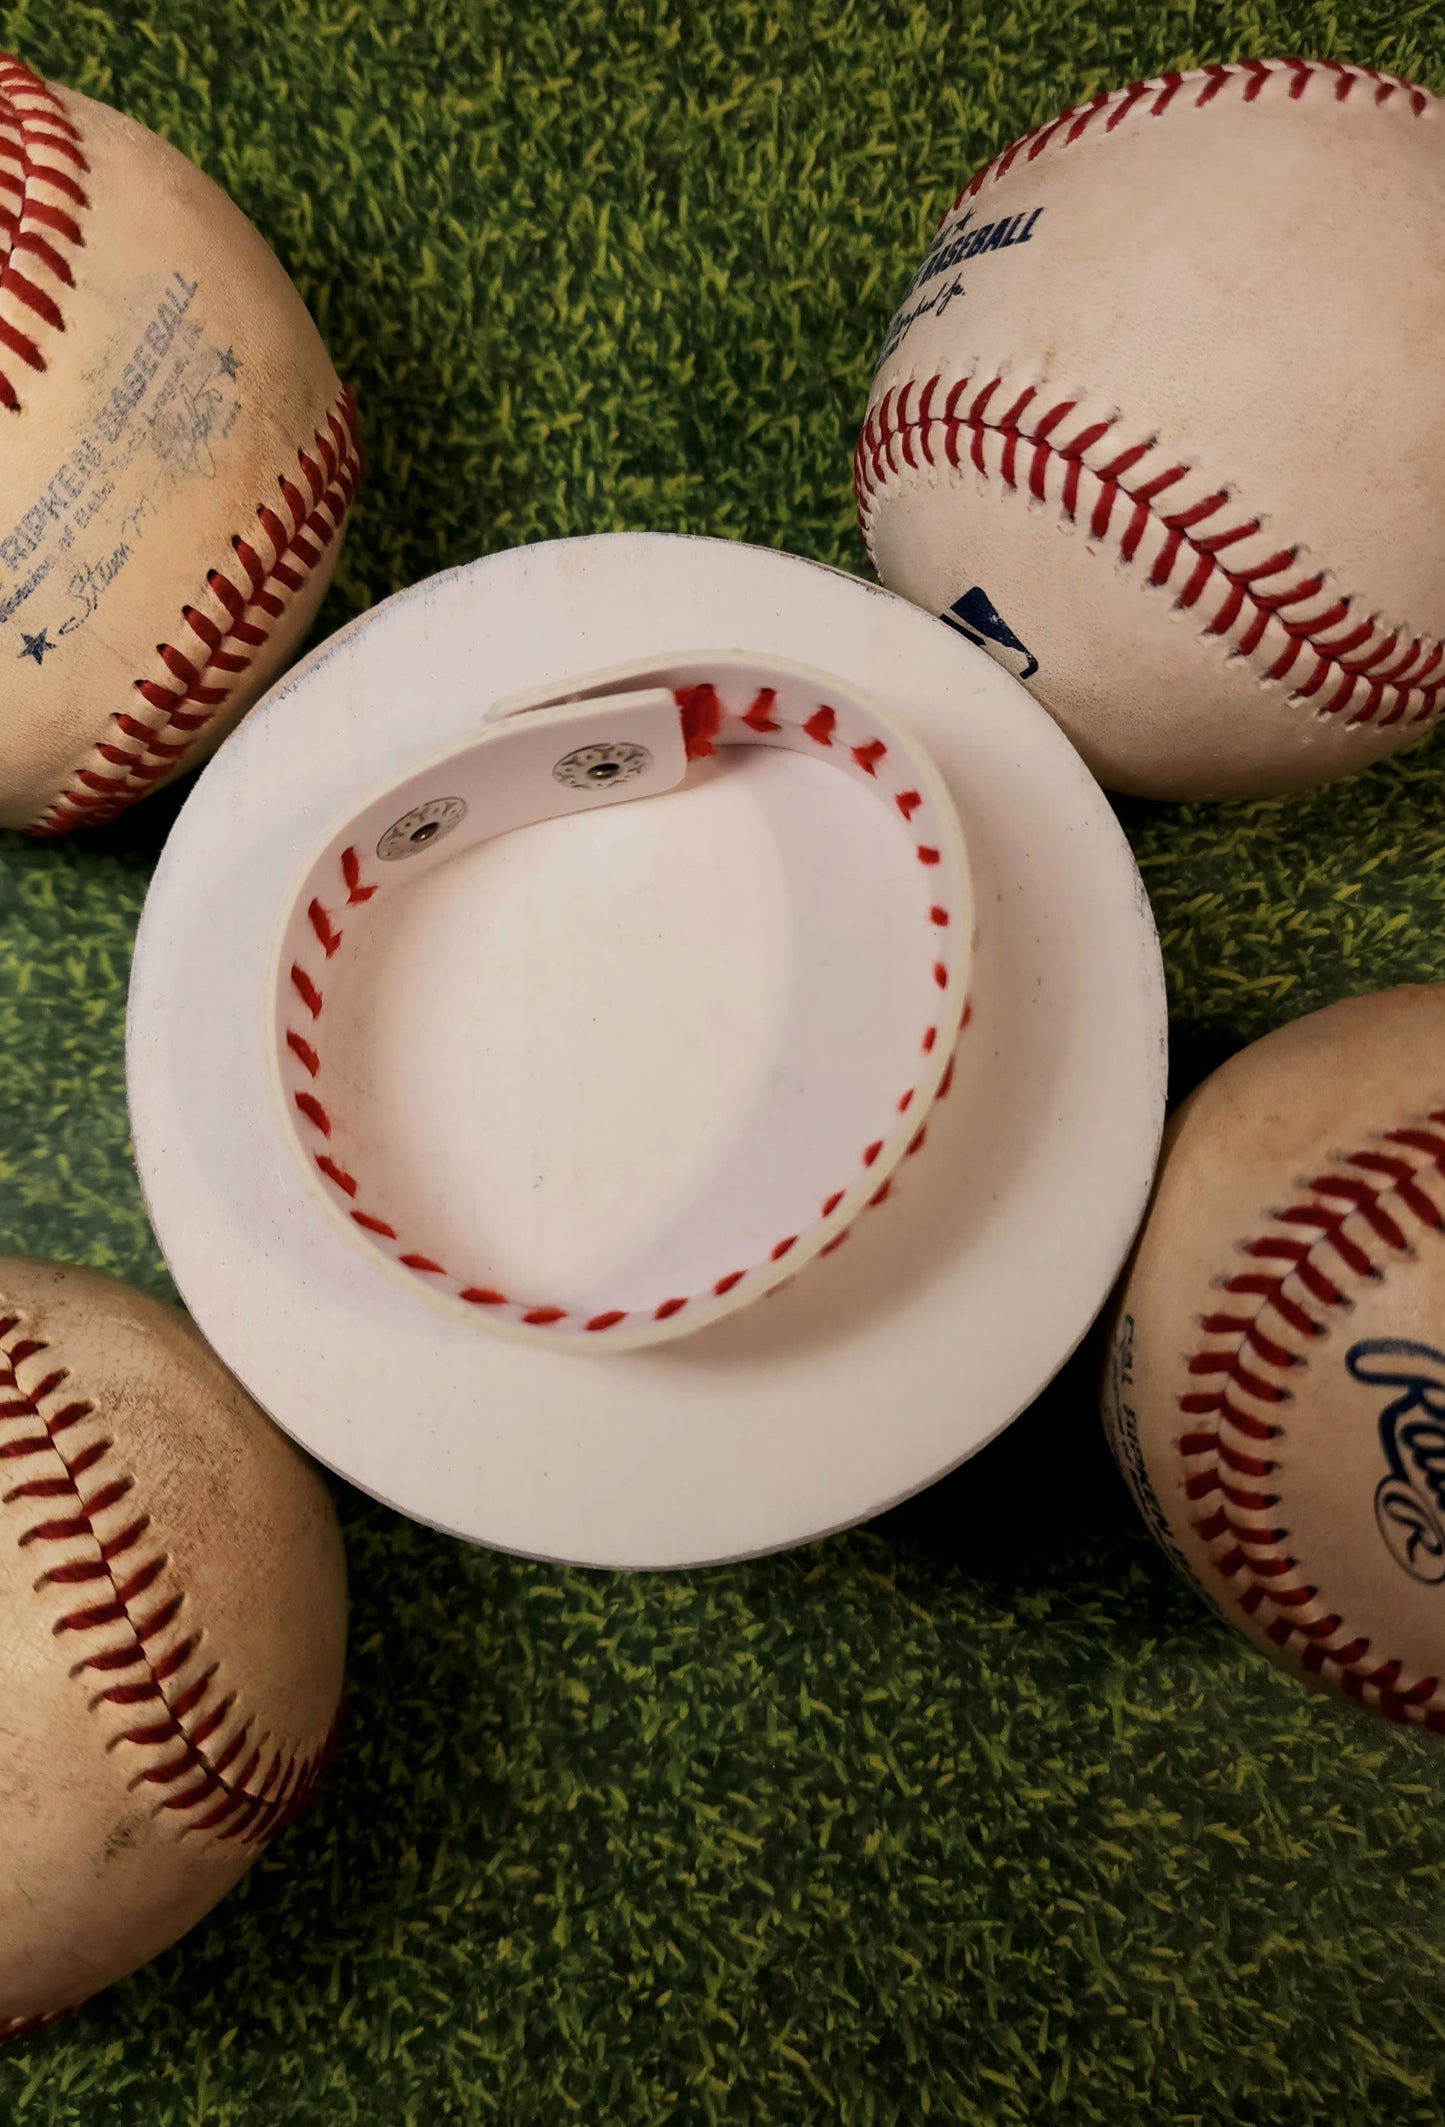 Baseball Stitching Leather Bracelet